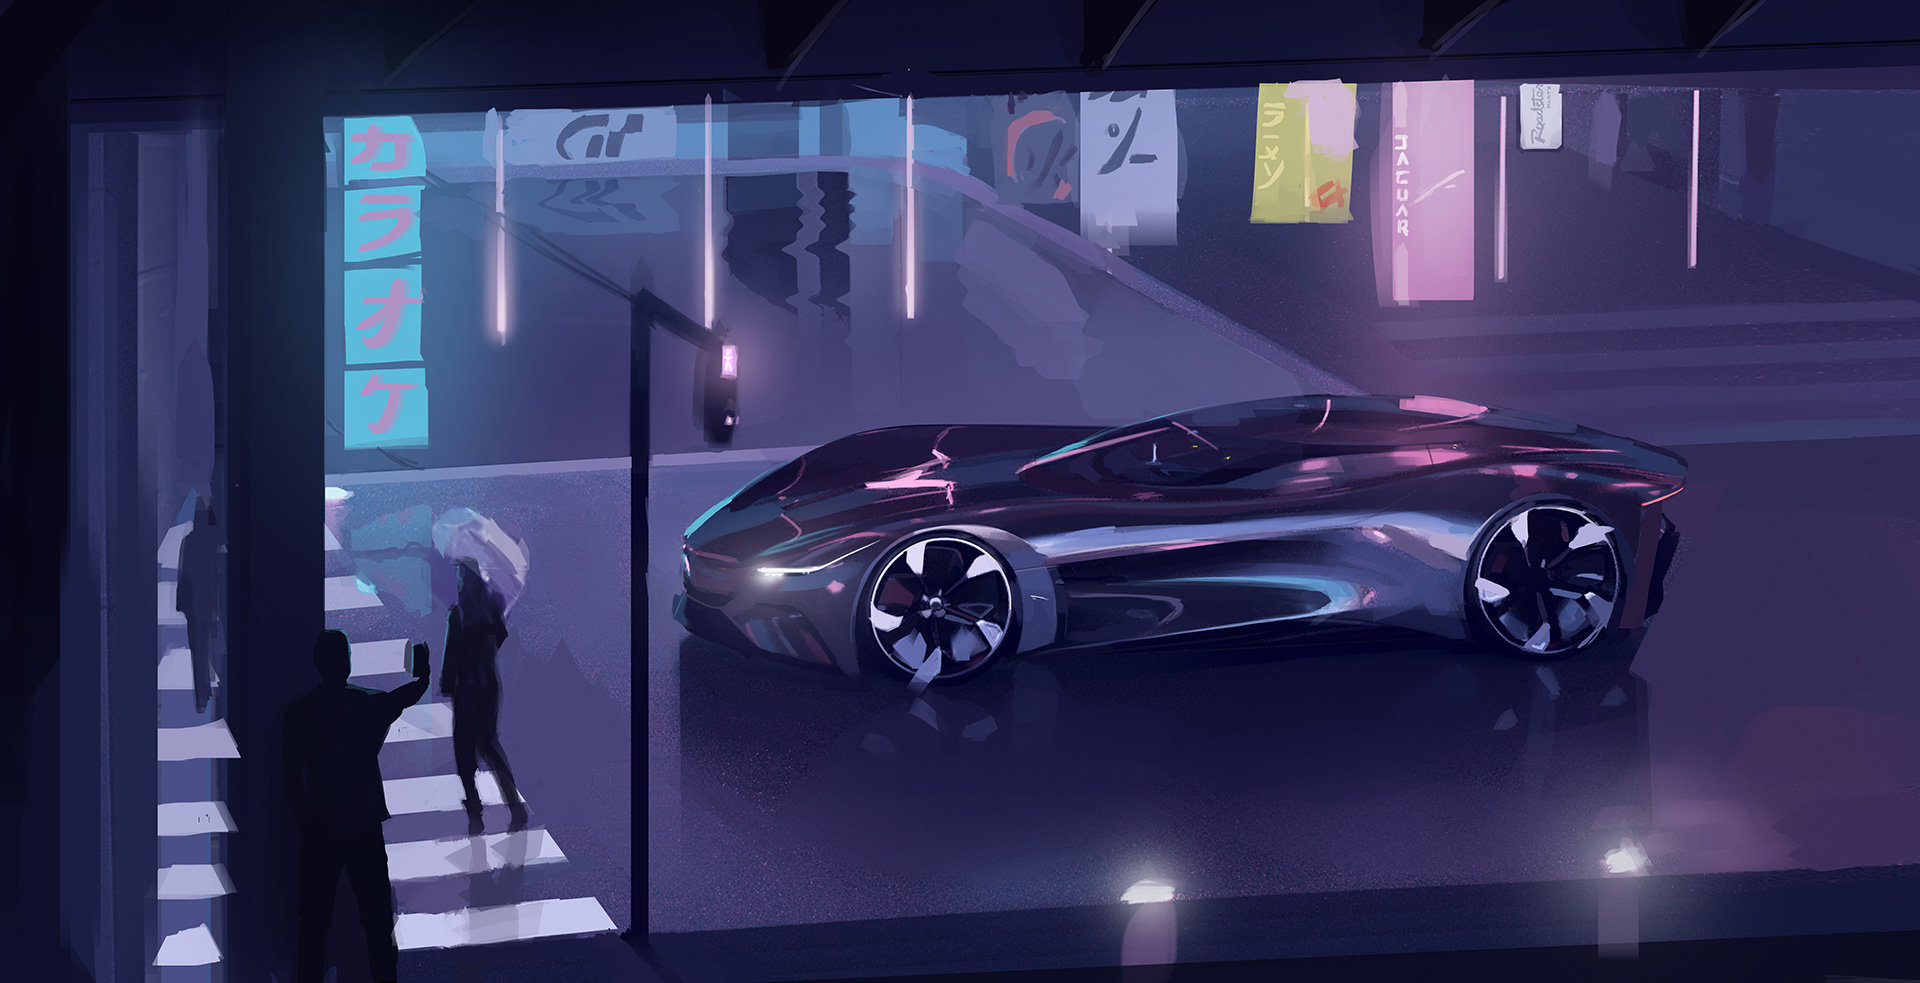 Apresentação do Vision Gran Turismo Coupé da Jaguar: um carro de